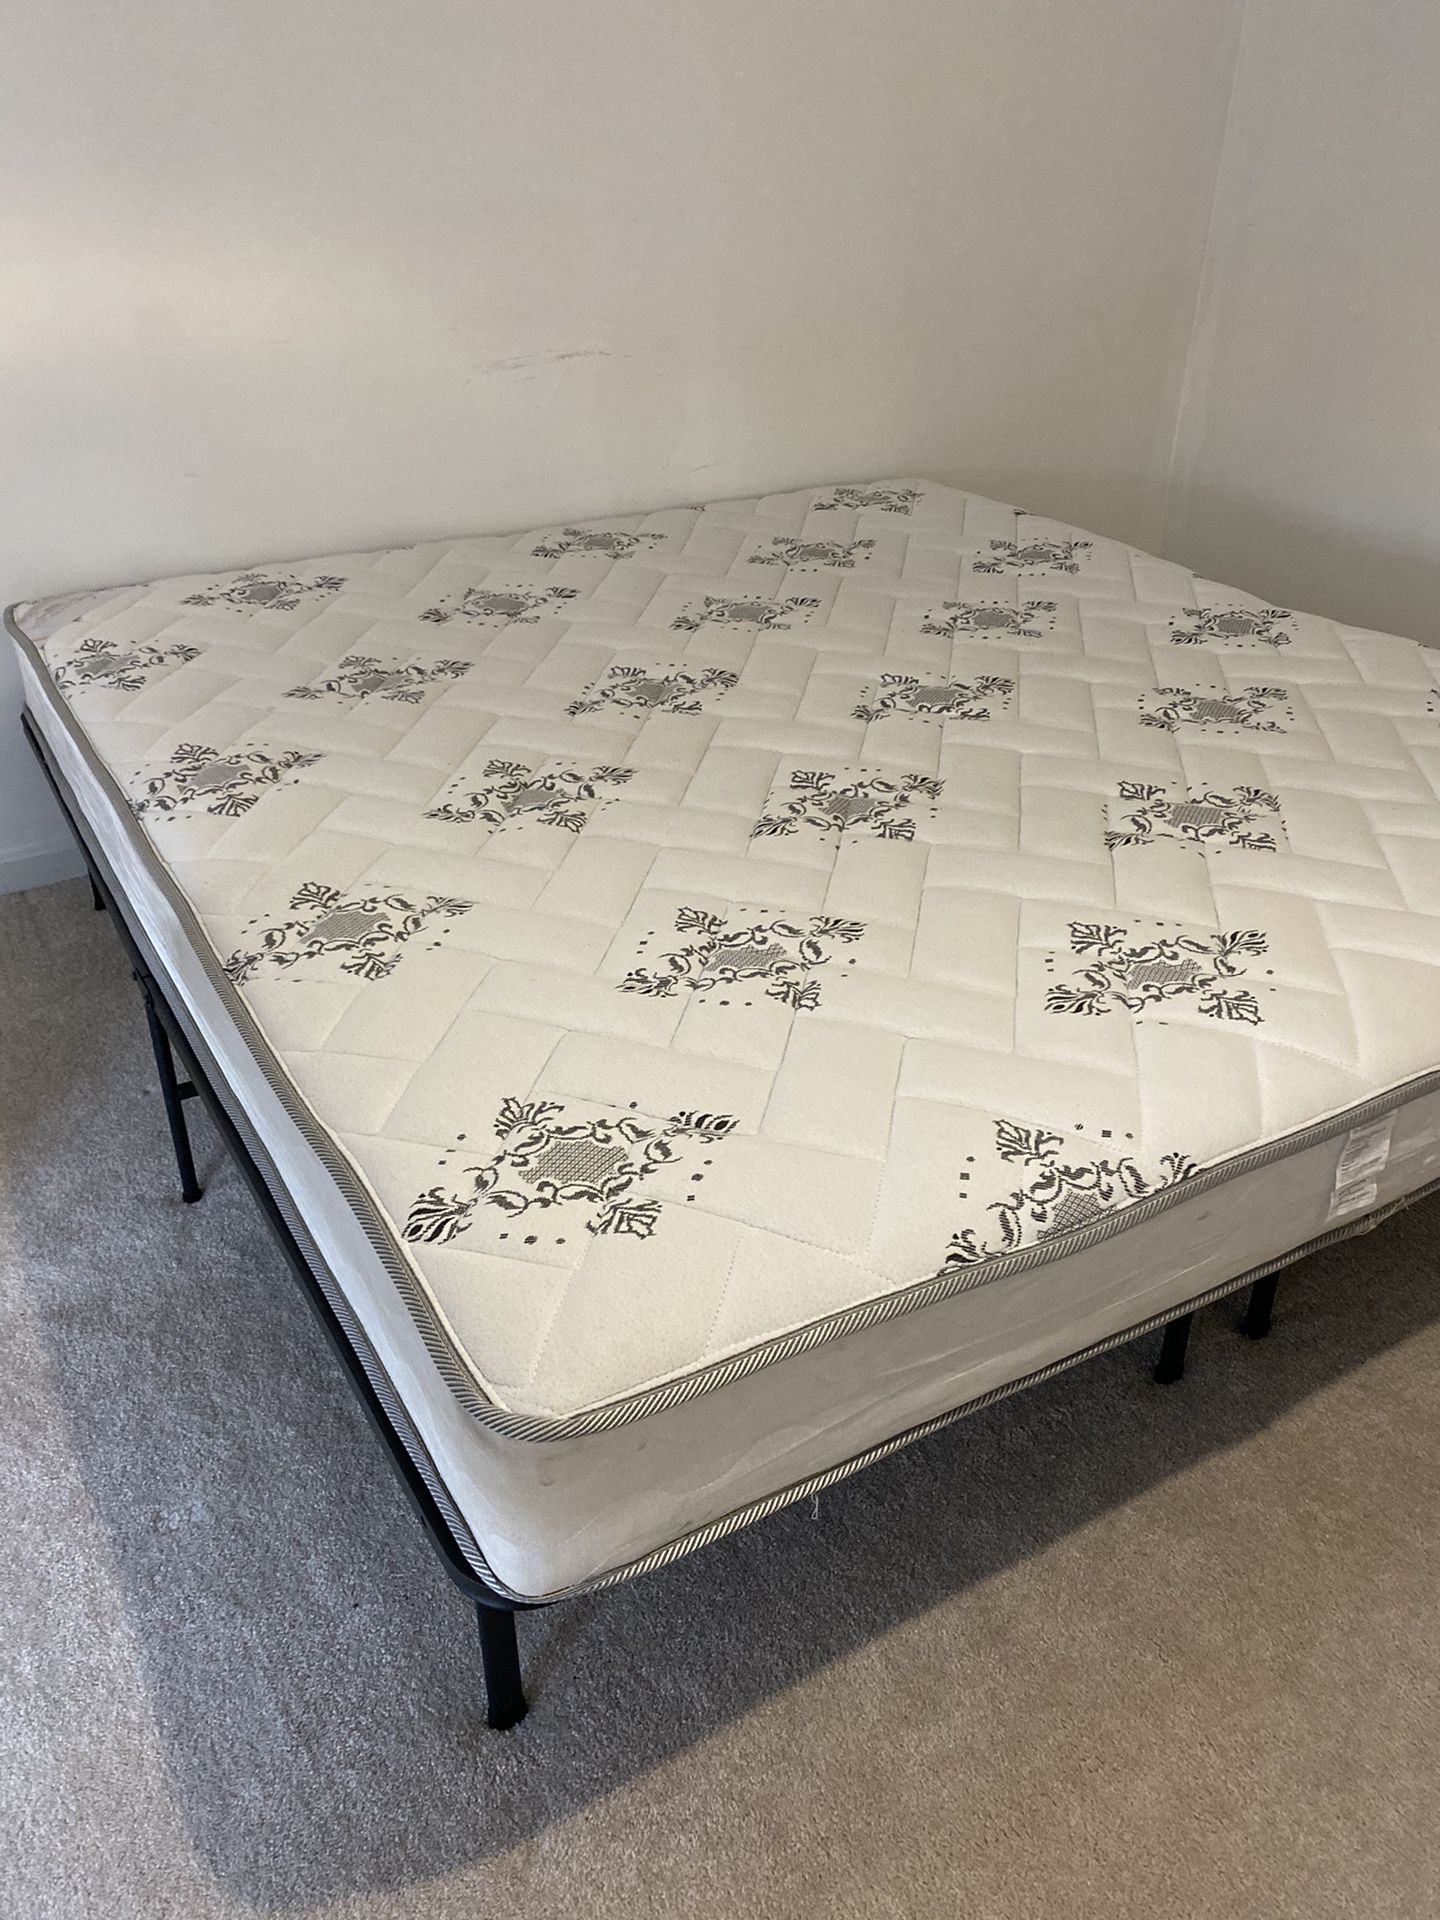 King size mattress very new!